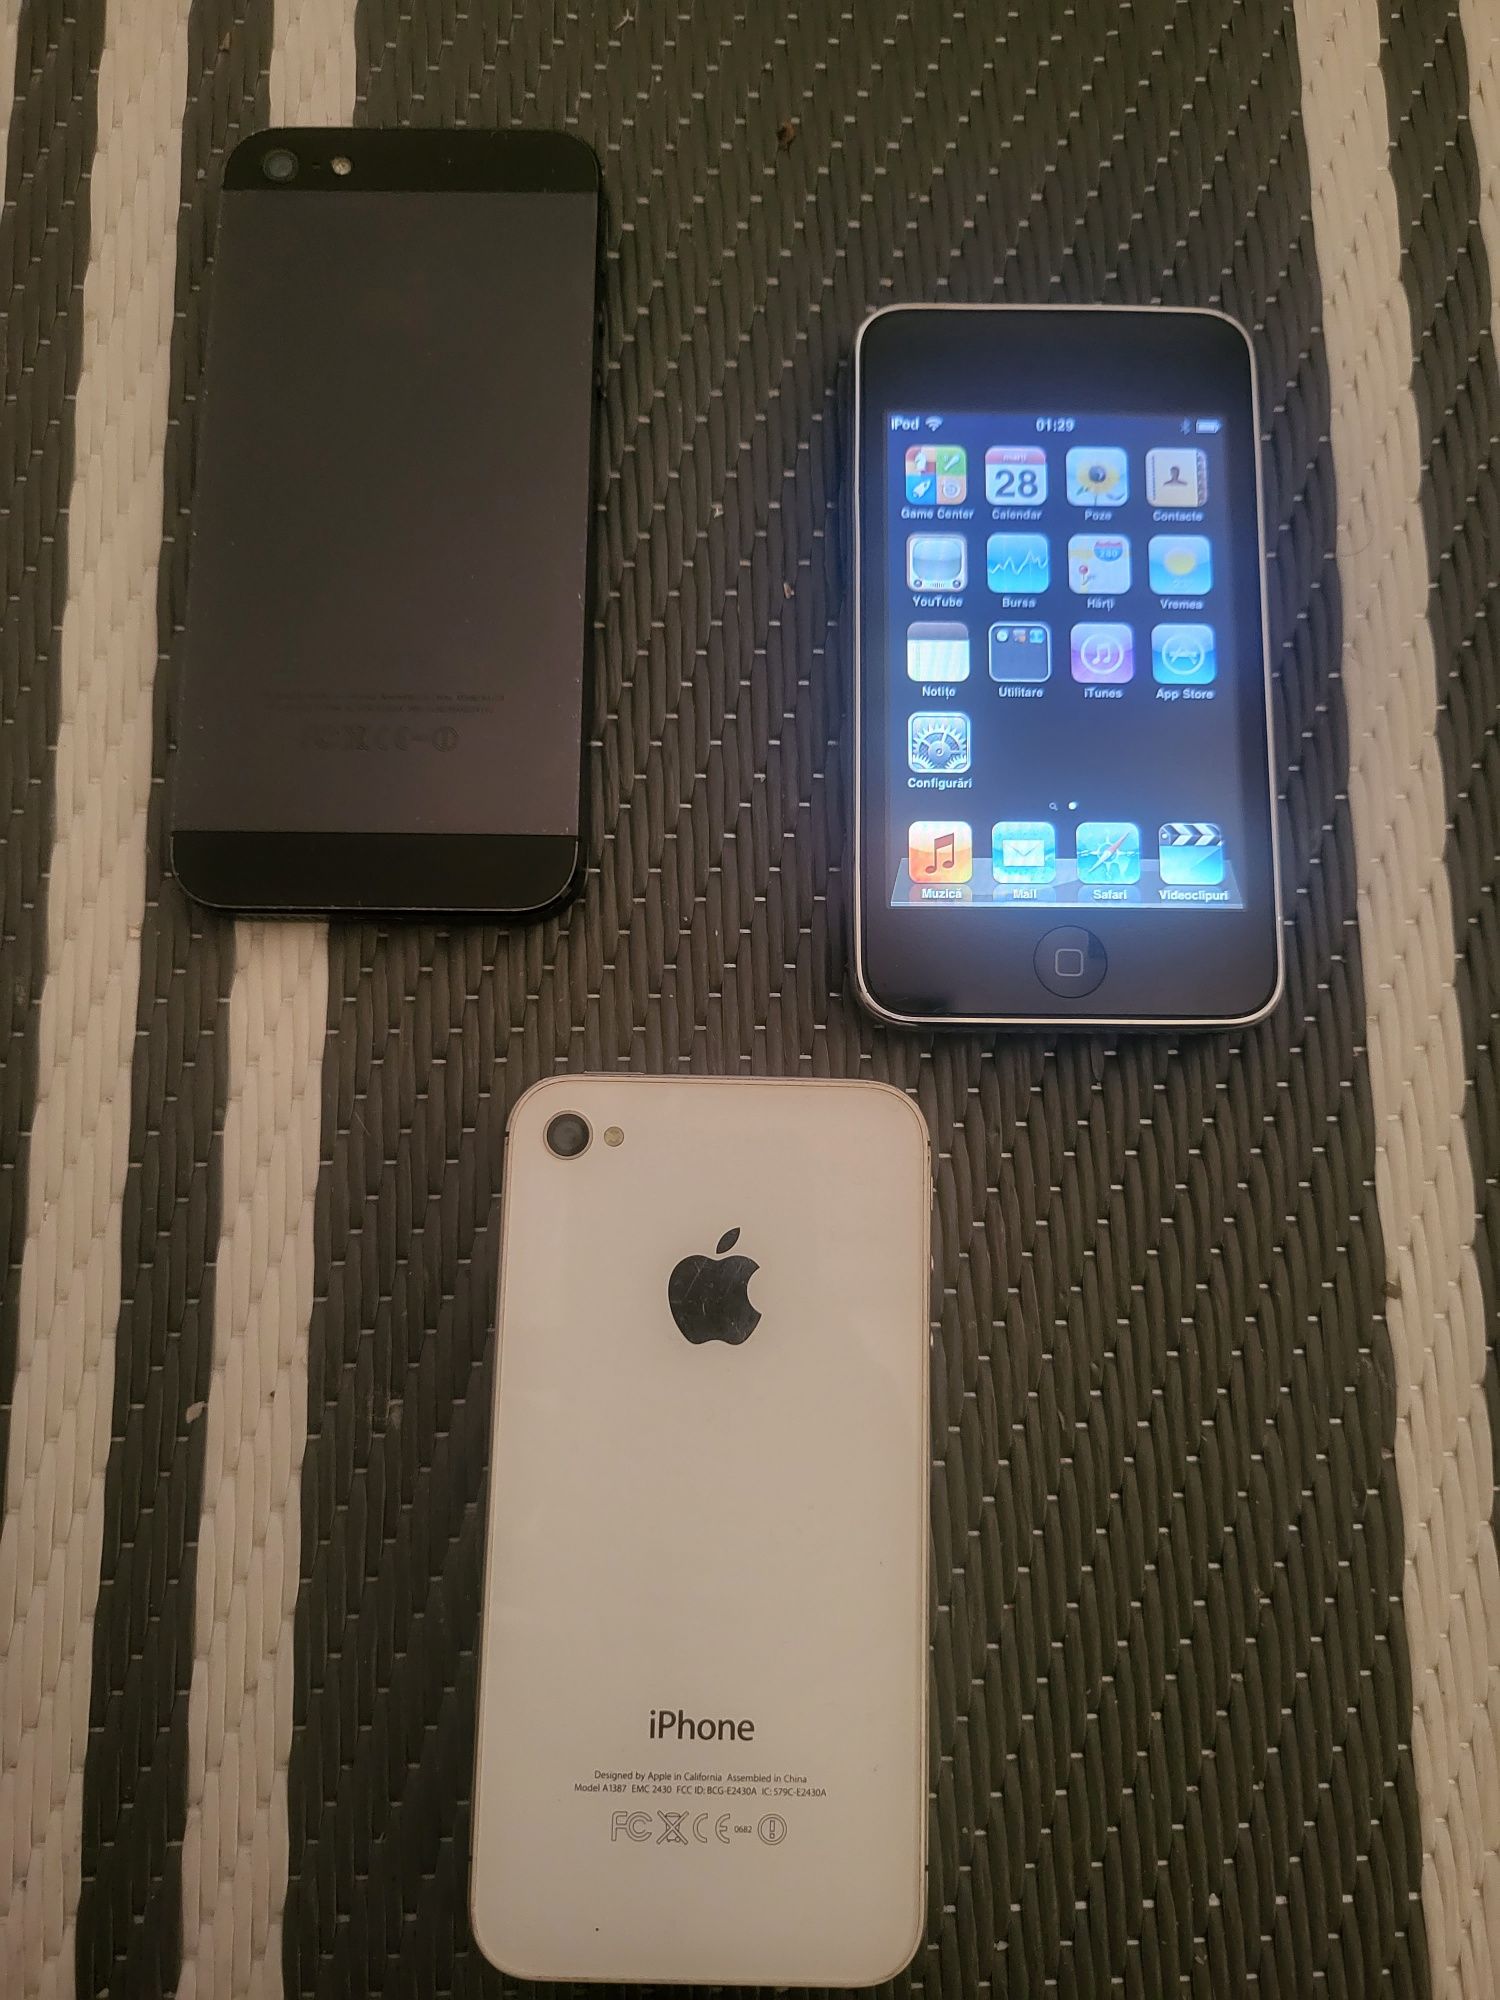 iPhone 4S, 5 și ipod